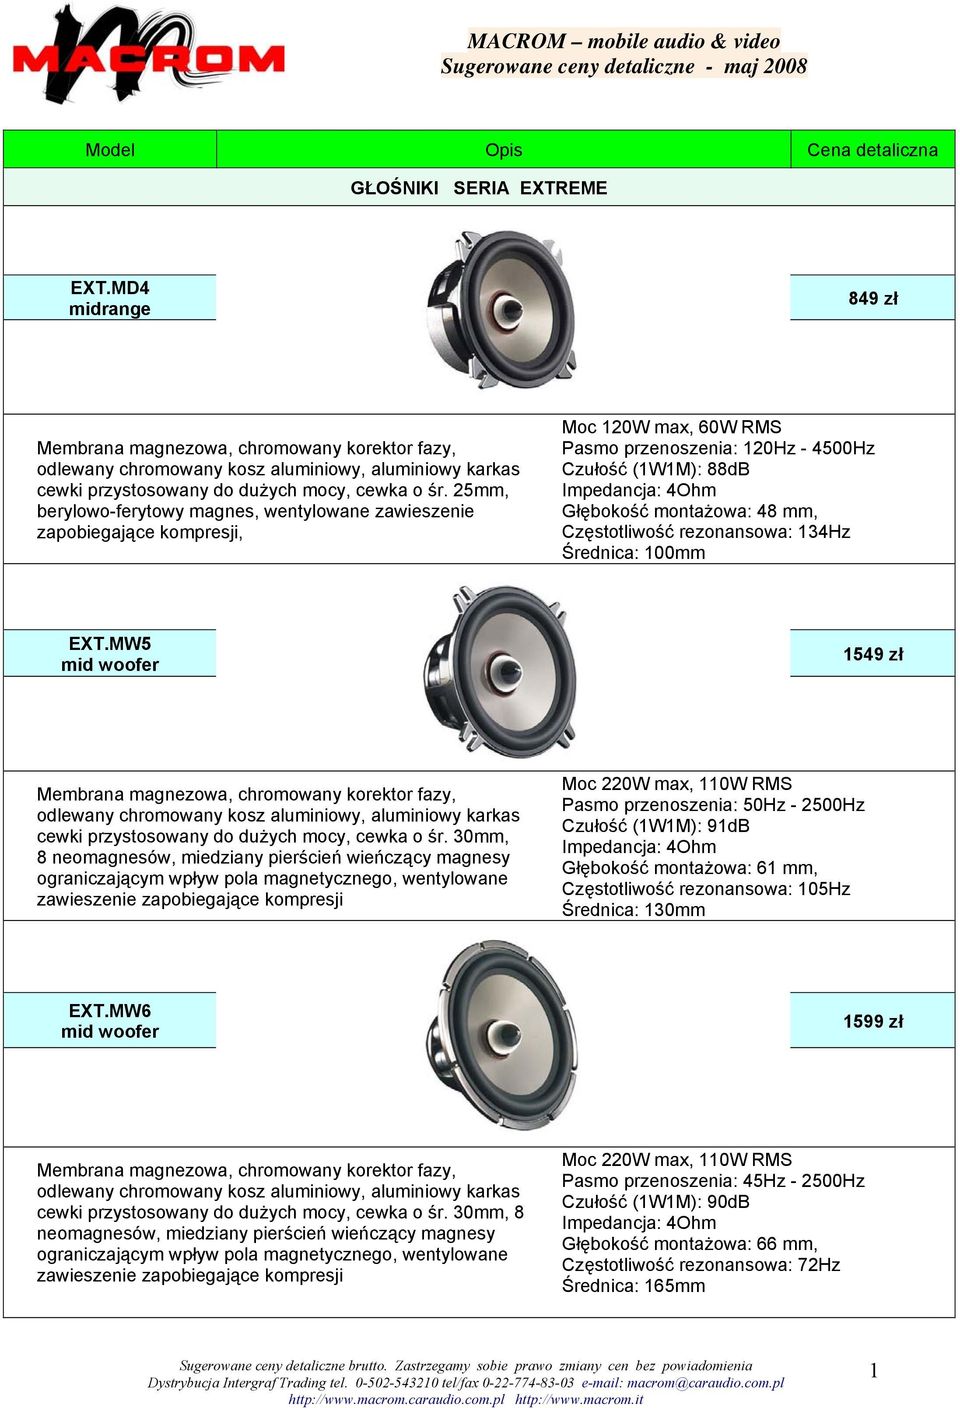 25mm, berylowo-ferytowy magnes, wentylowane zawieszenie zapobiegające kompresji, Moc 120W max, 60W RMS Pasmo przenoszenia: 120Hz - 4500Hz Czułość (1W1M): 88dB Częstotliwość rezonansowa: 134Hz EXT.